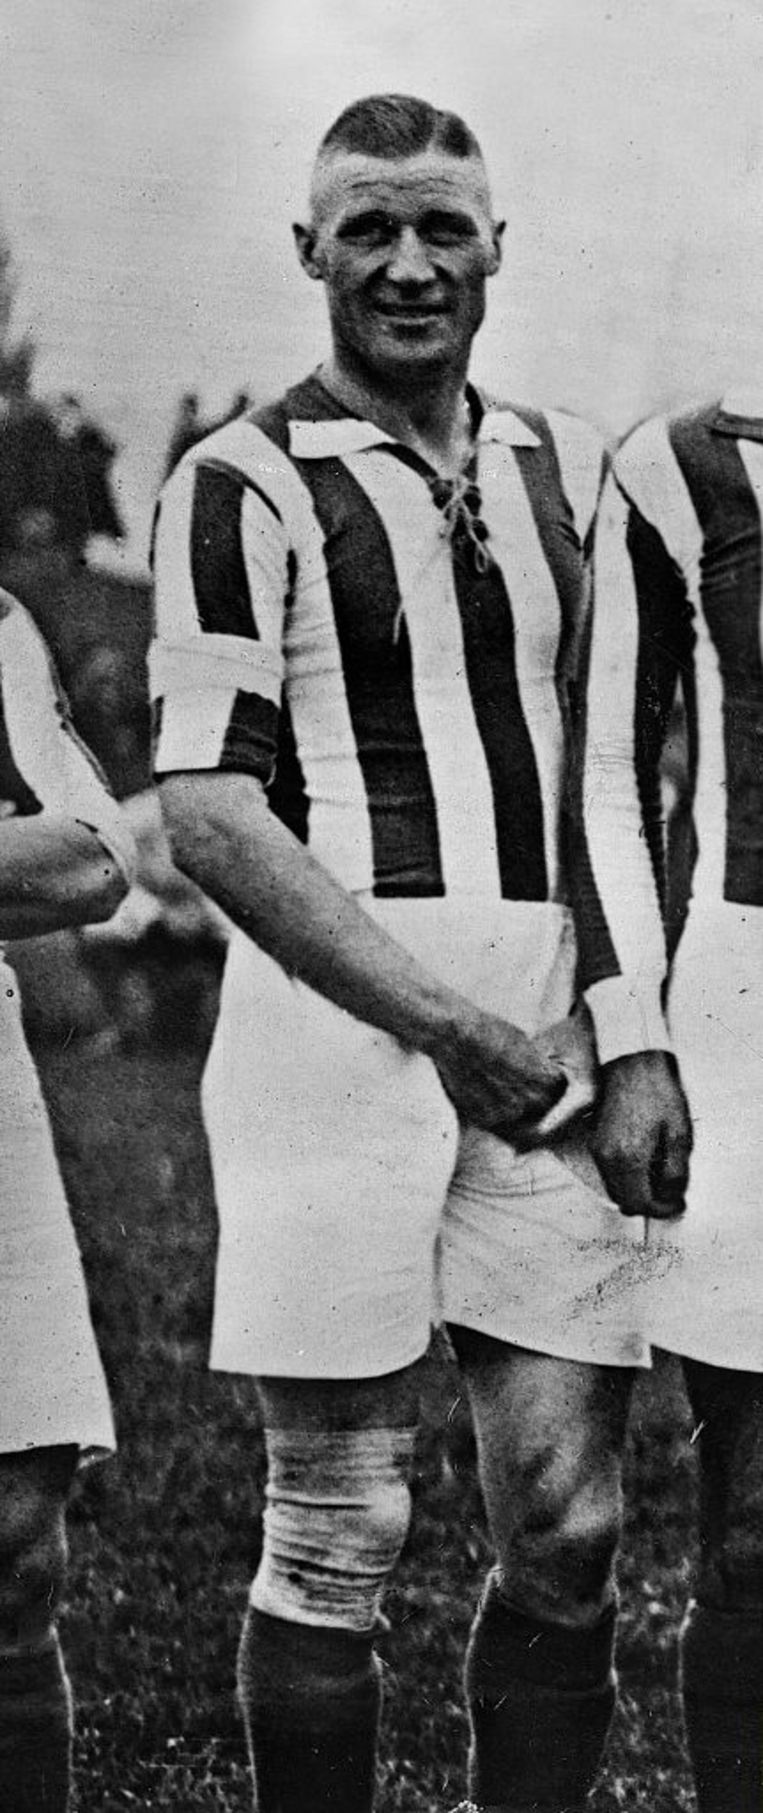 Otto (Tull) Harder, hier in 1928, de populaire voetballer die later SS’er werd in een concentratie-kamp. Beeld ullstein bild via Getty Images